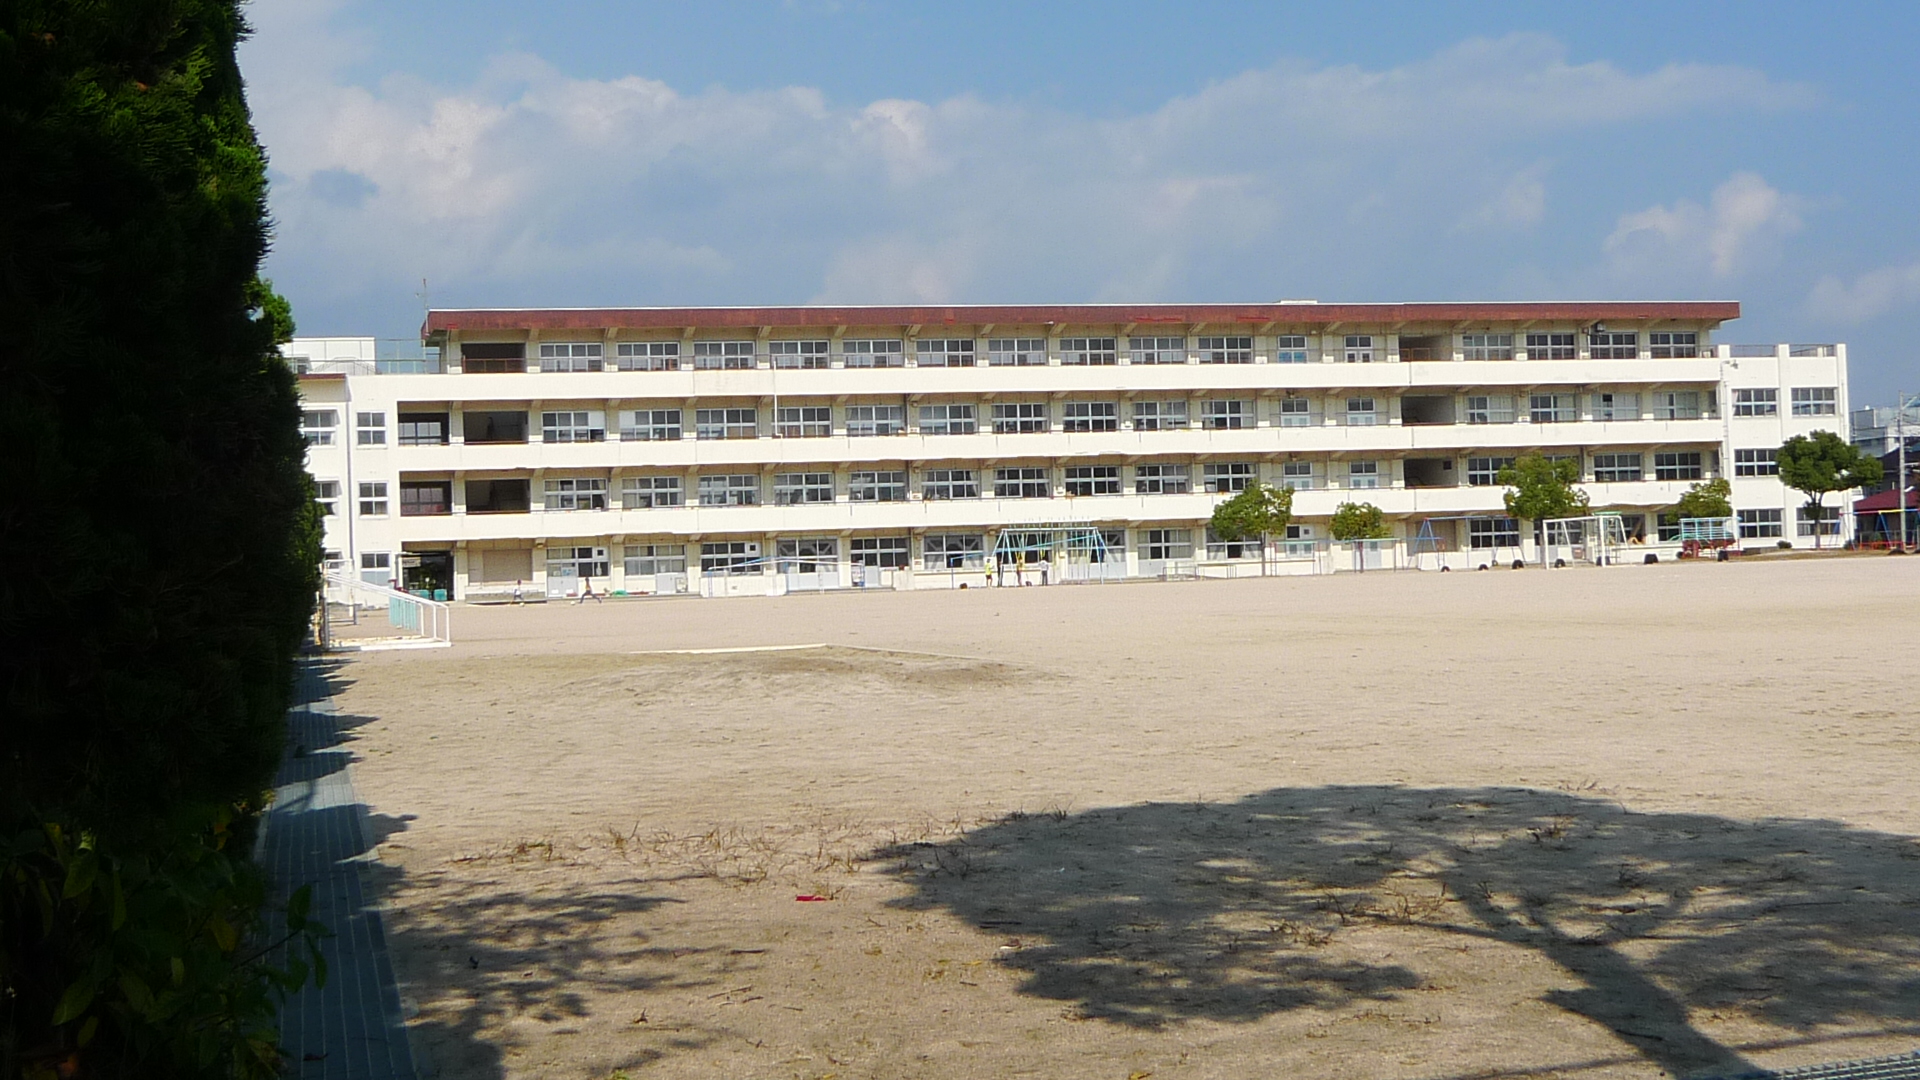 Primary school. 309m to Hiroshima Municipal Itsukaichi Minami elementary school (elementary school)